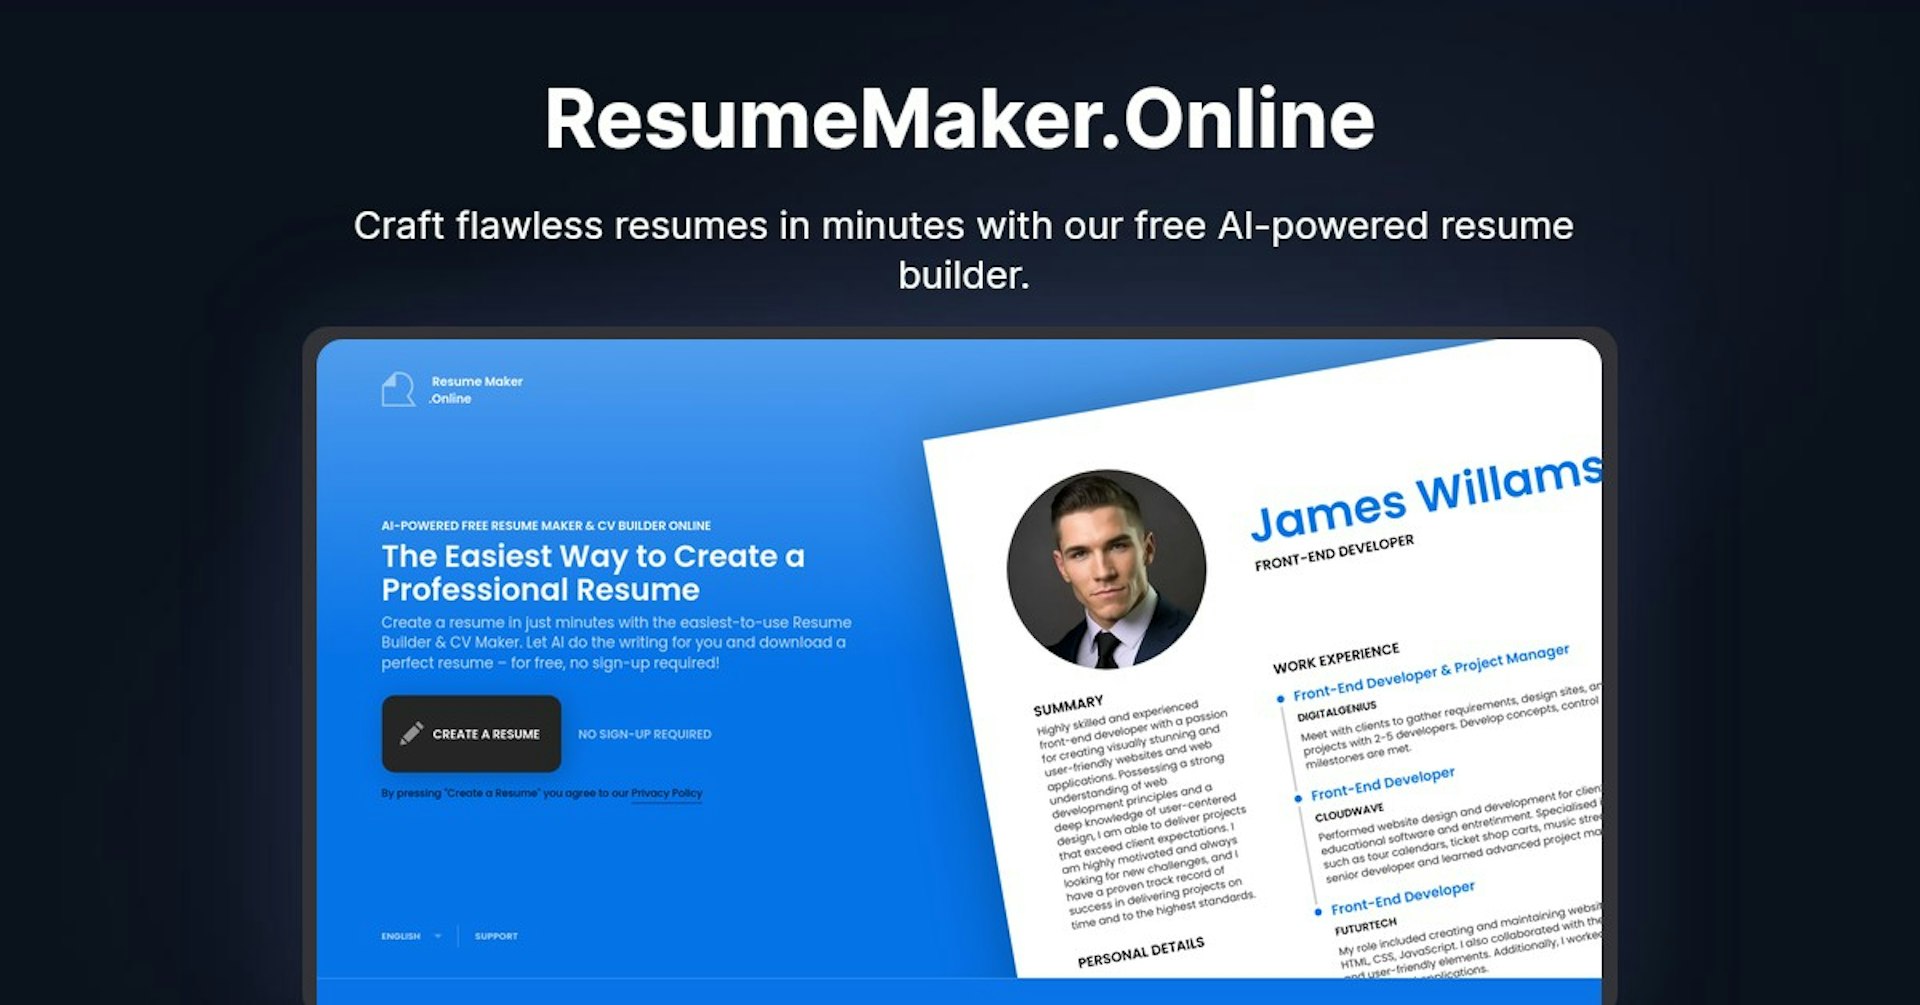 ResumeMaker.Online